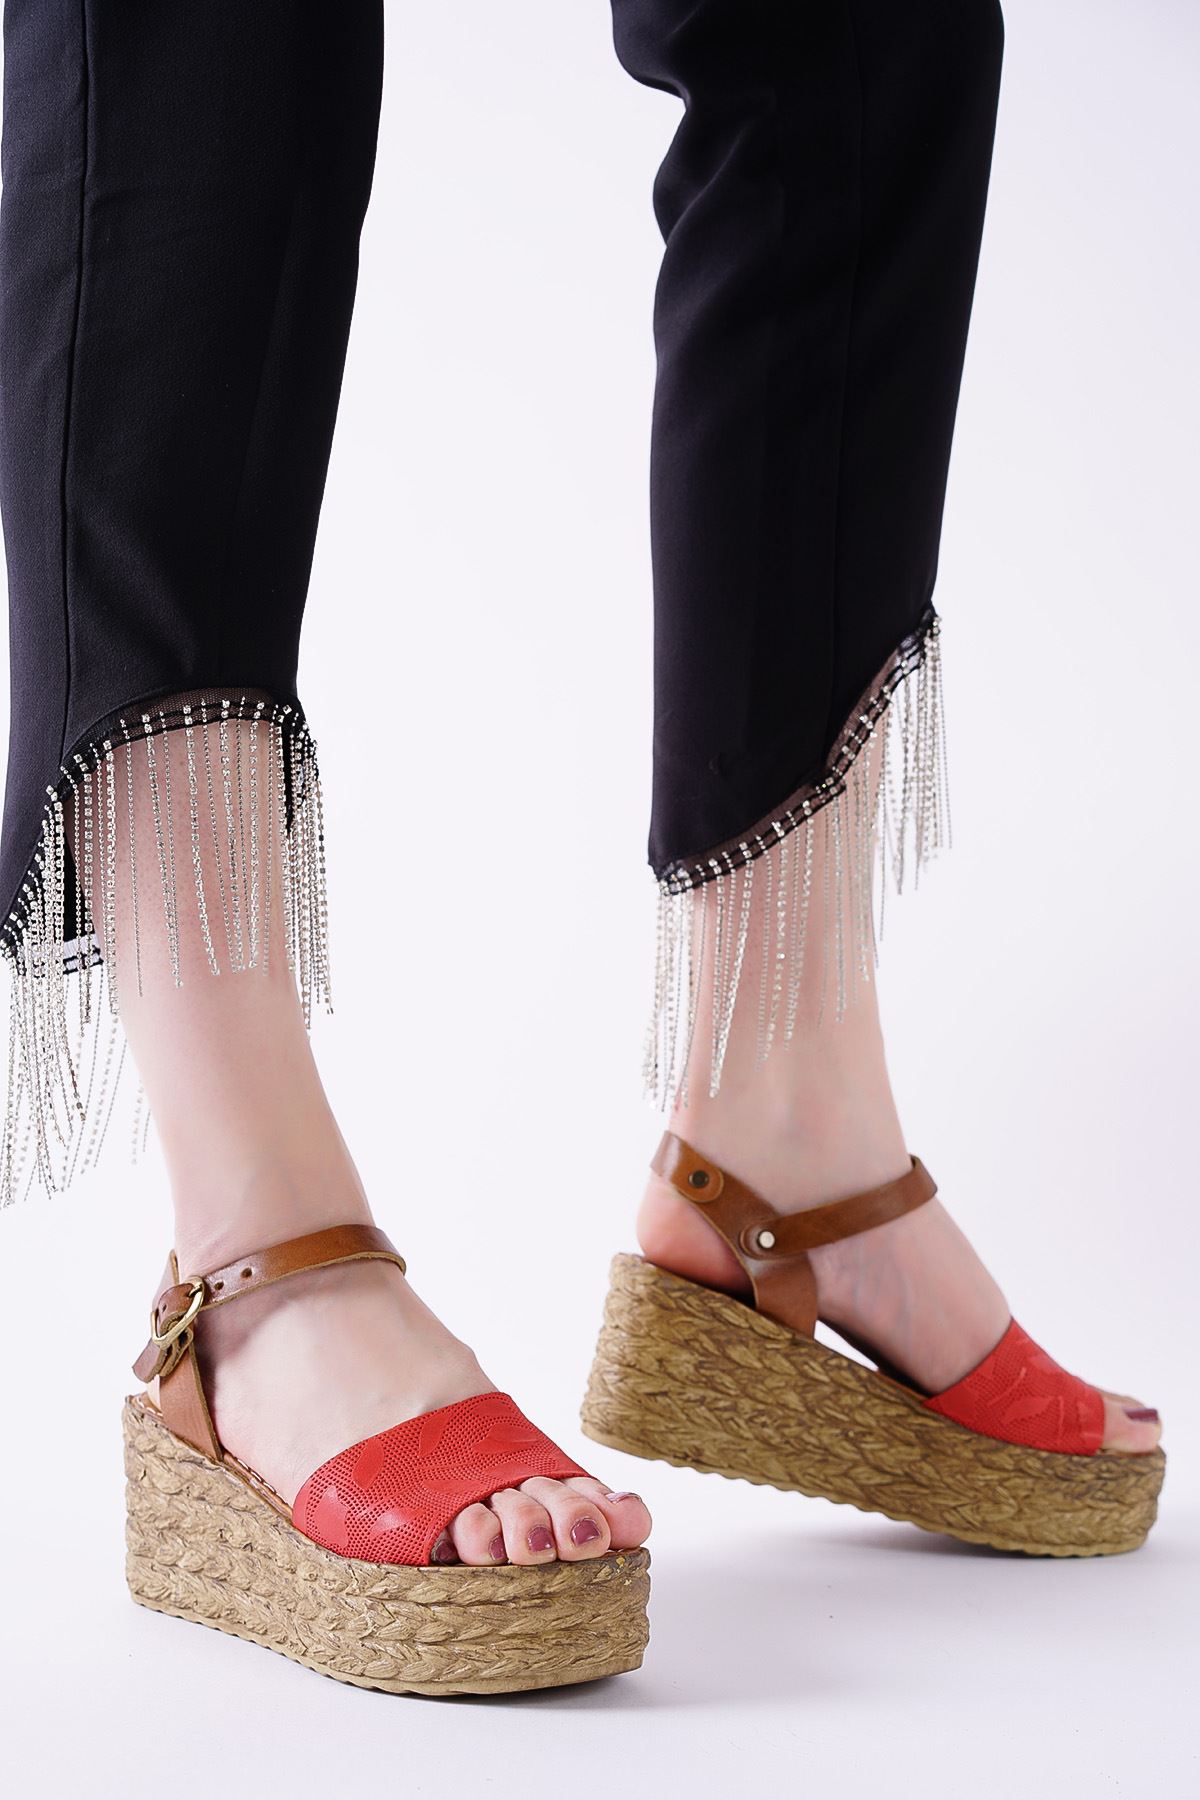 Megan Kırmızı Taba Hakiki Deri Dolgu Topuklu Kadın Ayakkabı